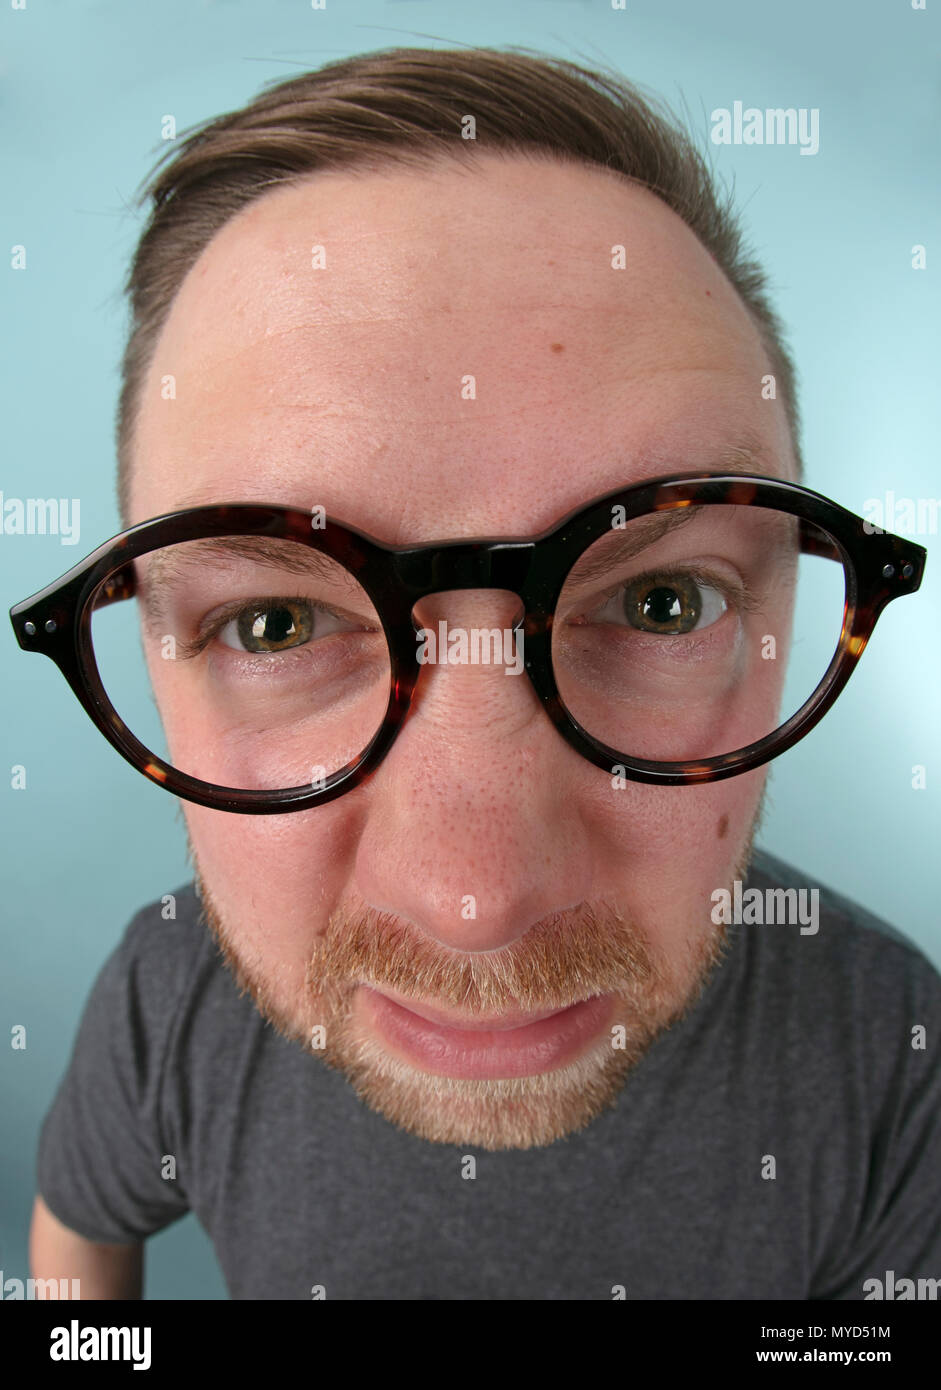 Mann mit großen Gläsern nach vorne Strecken in das Objektiv in einer  verzerrten Perspektive seine Augen und Brille betont in einem Spaß  portrait-to-Peer Stockfotografie - Alamy